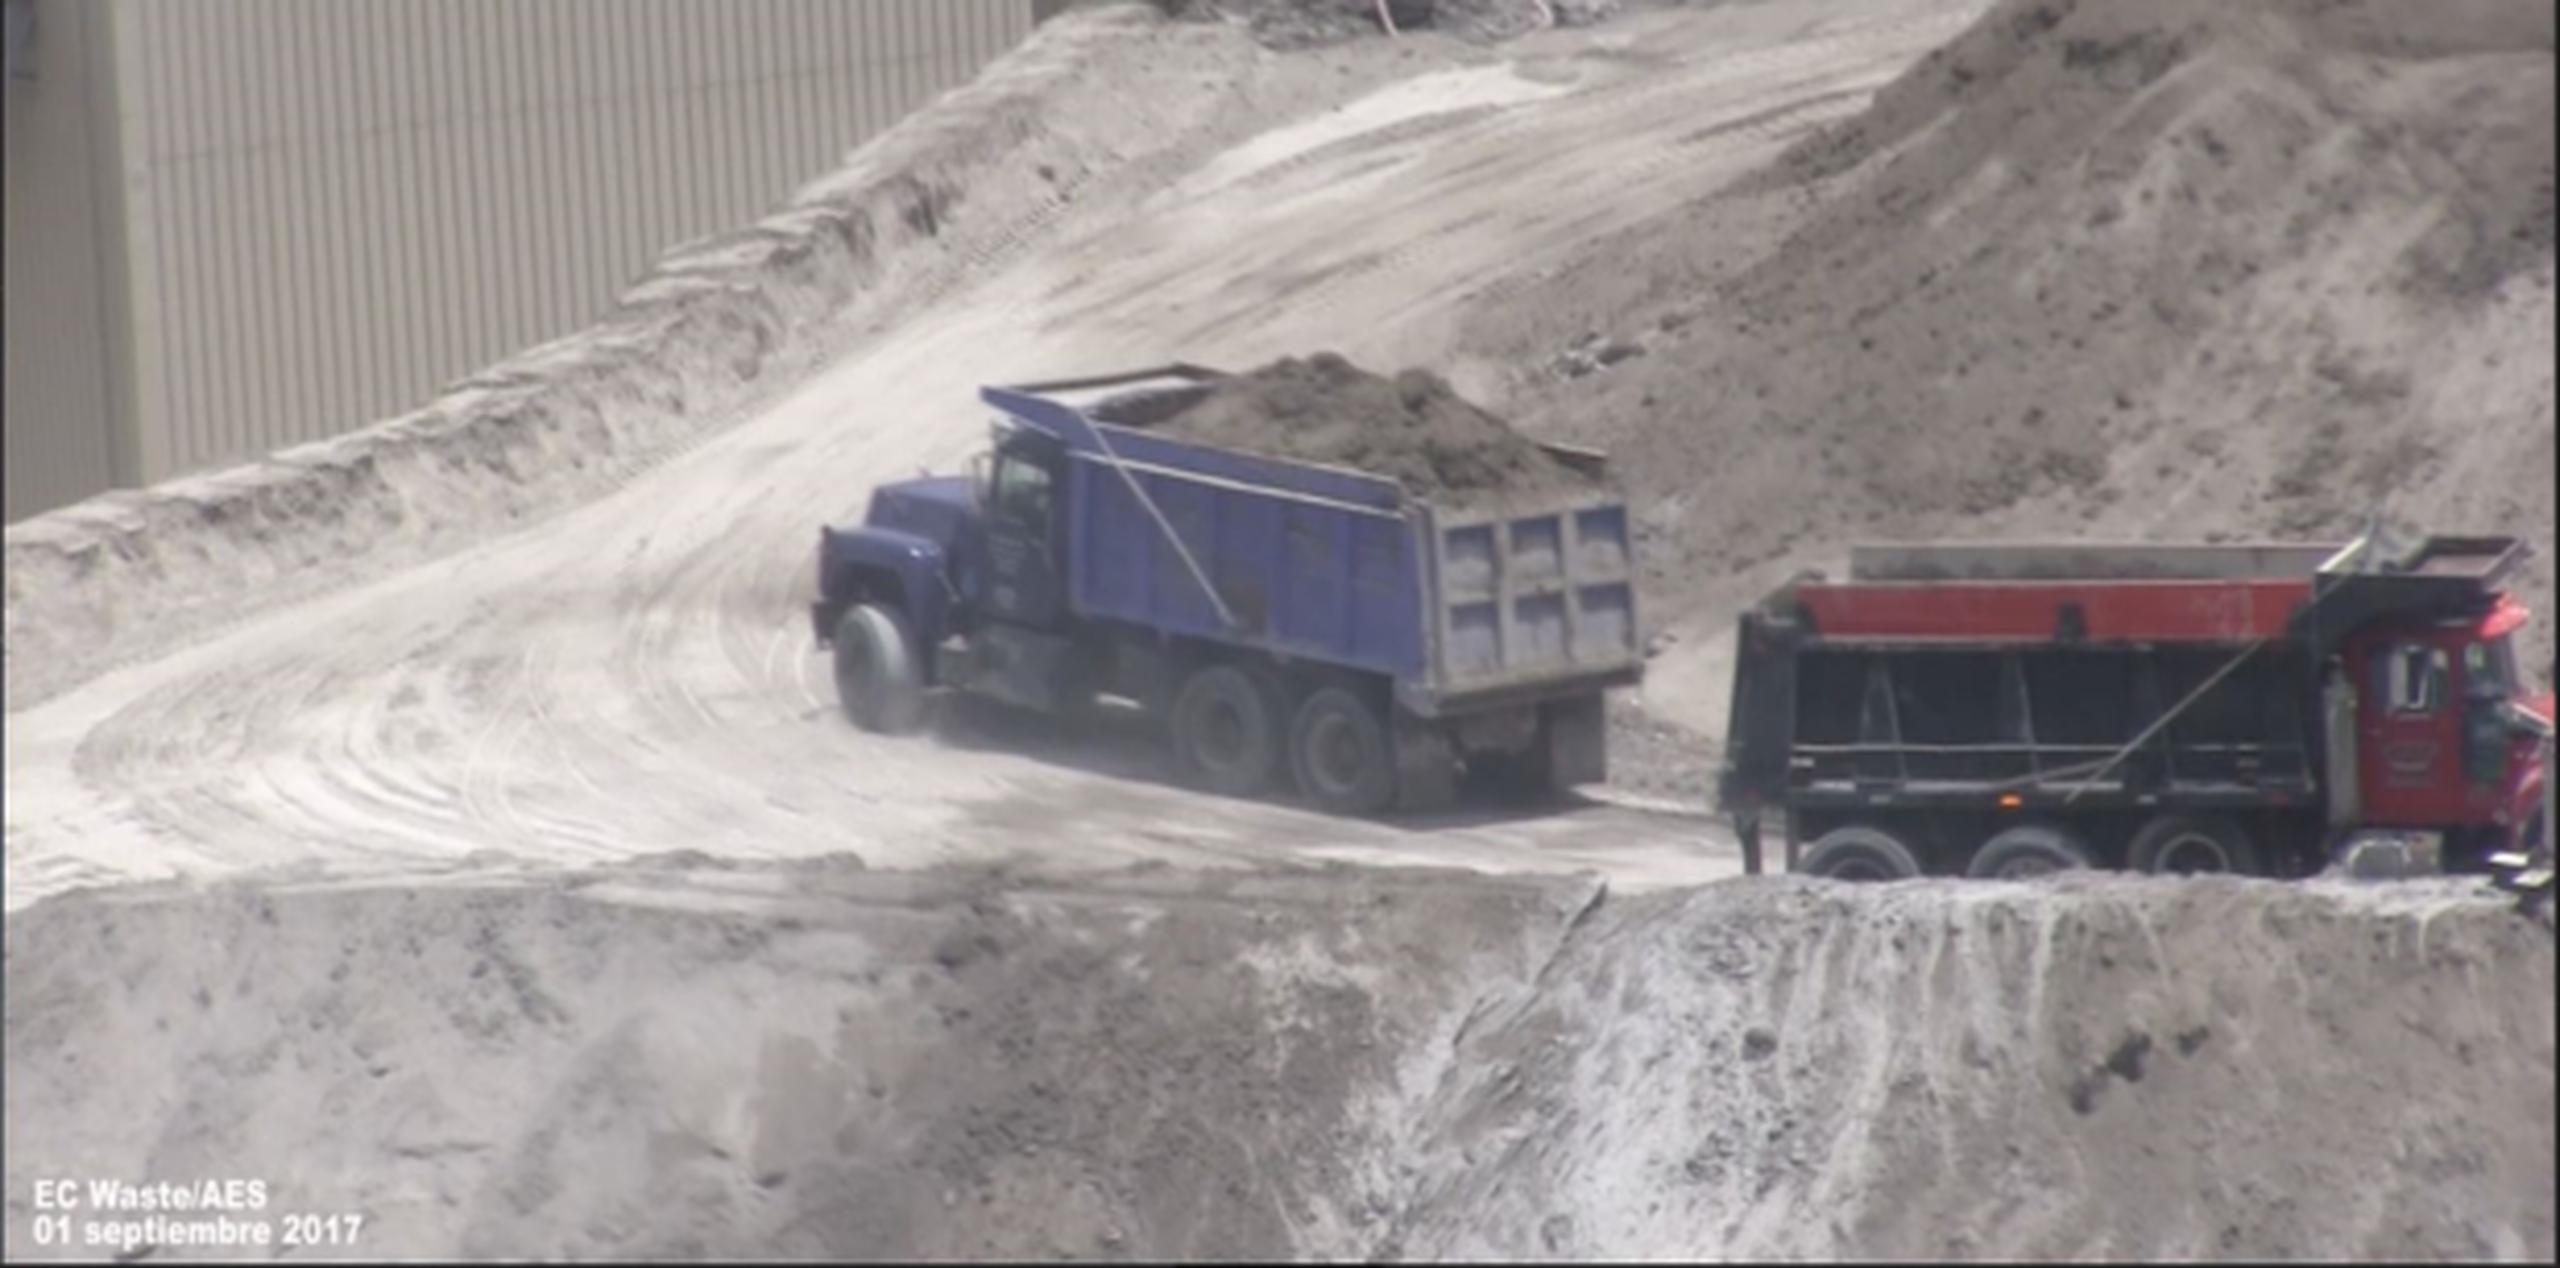 Imagen tomada por los senadores que muestra a un camión transportando cenizas de carbón sin tapar, en violación a los protocolos que se supone usen para evitar que el viento disperse las cenizas. (Suministradas)